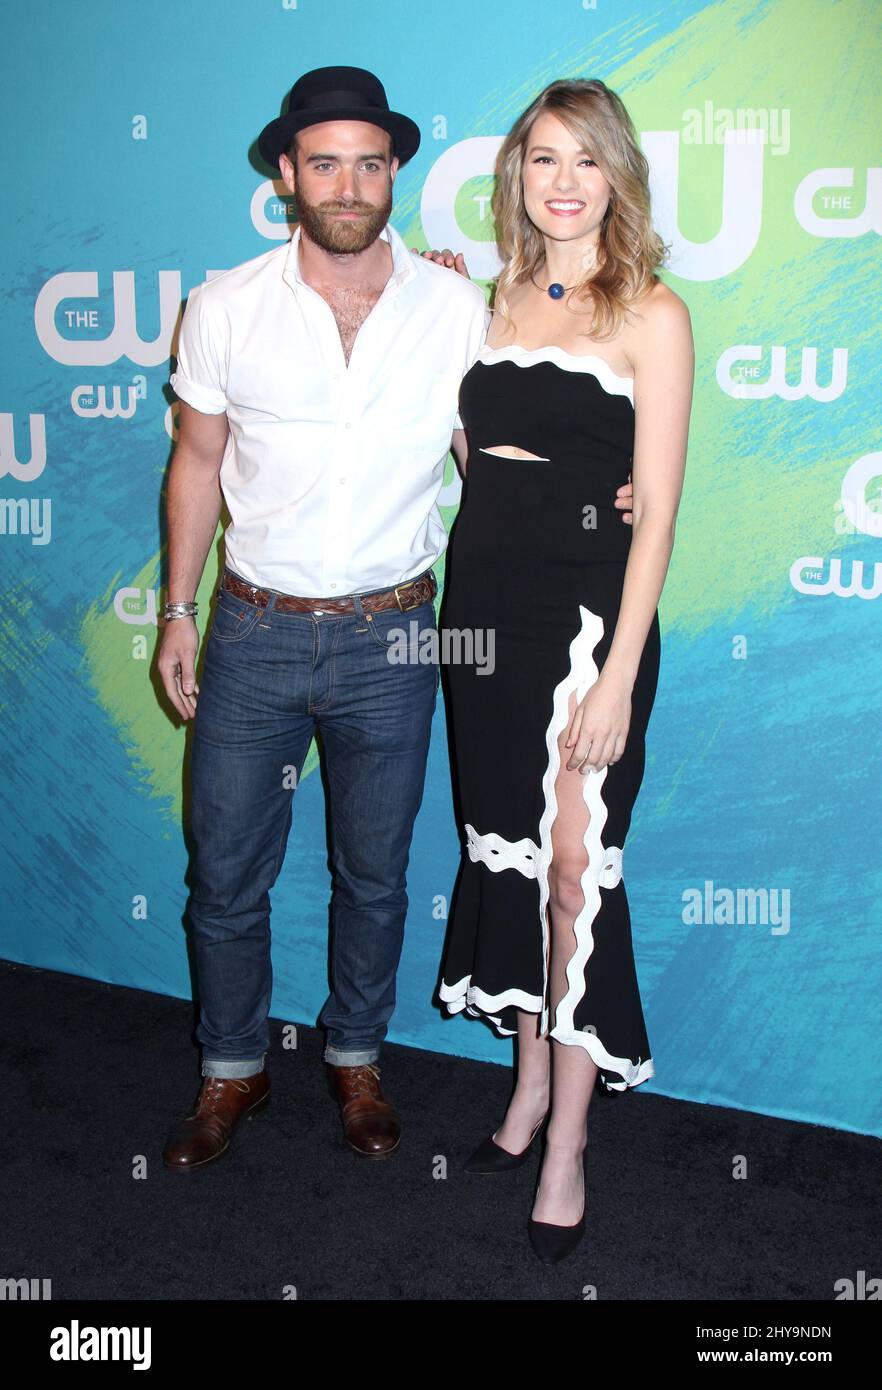 Joshua Sasse und Tori Anderson nehmen an der Upfront-Präsentation des CW Network 2016 am Donnerstag, 19. Mai 2016, in New York Teil. Stockfoto